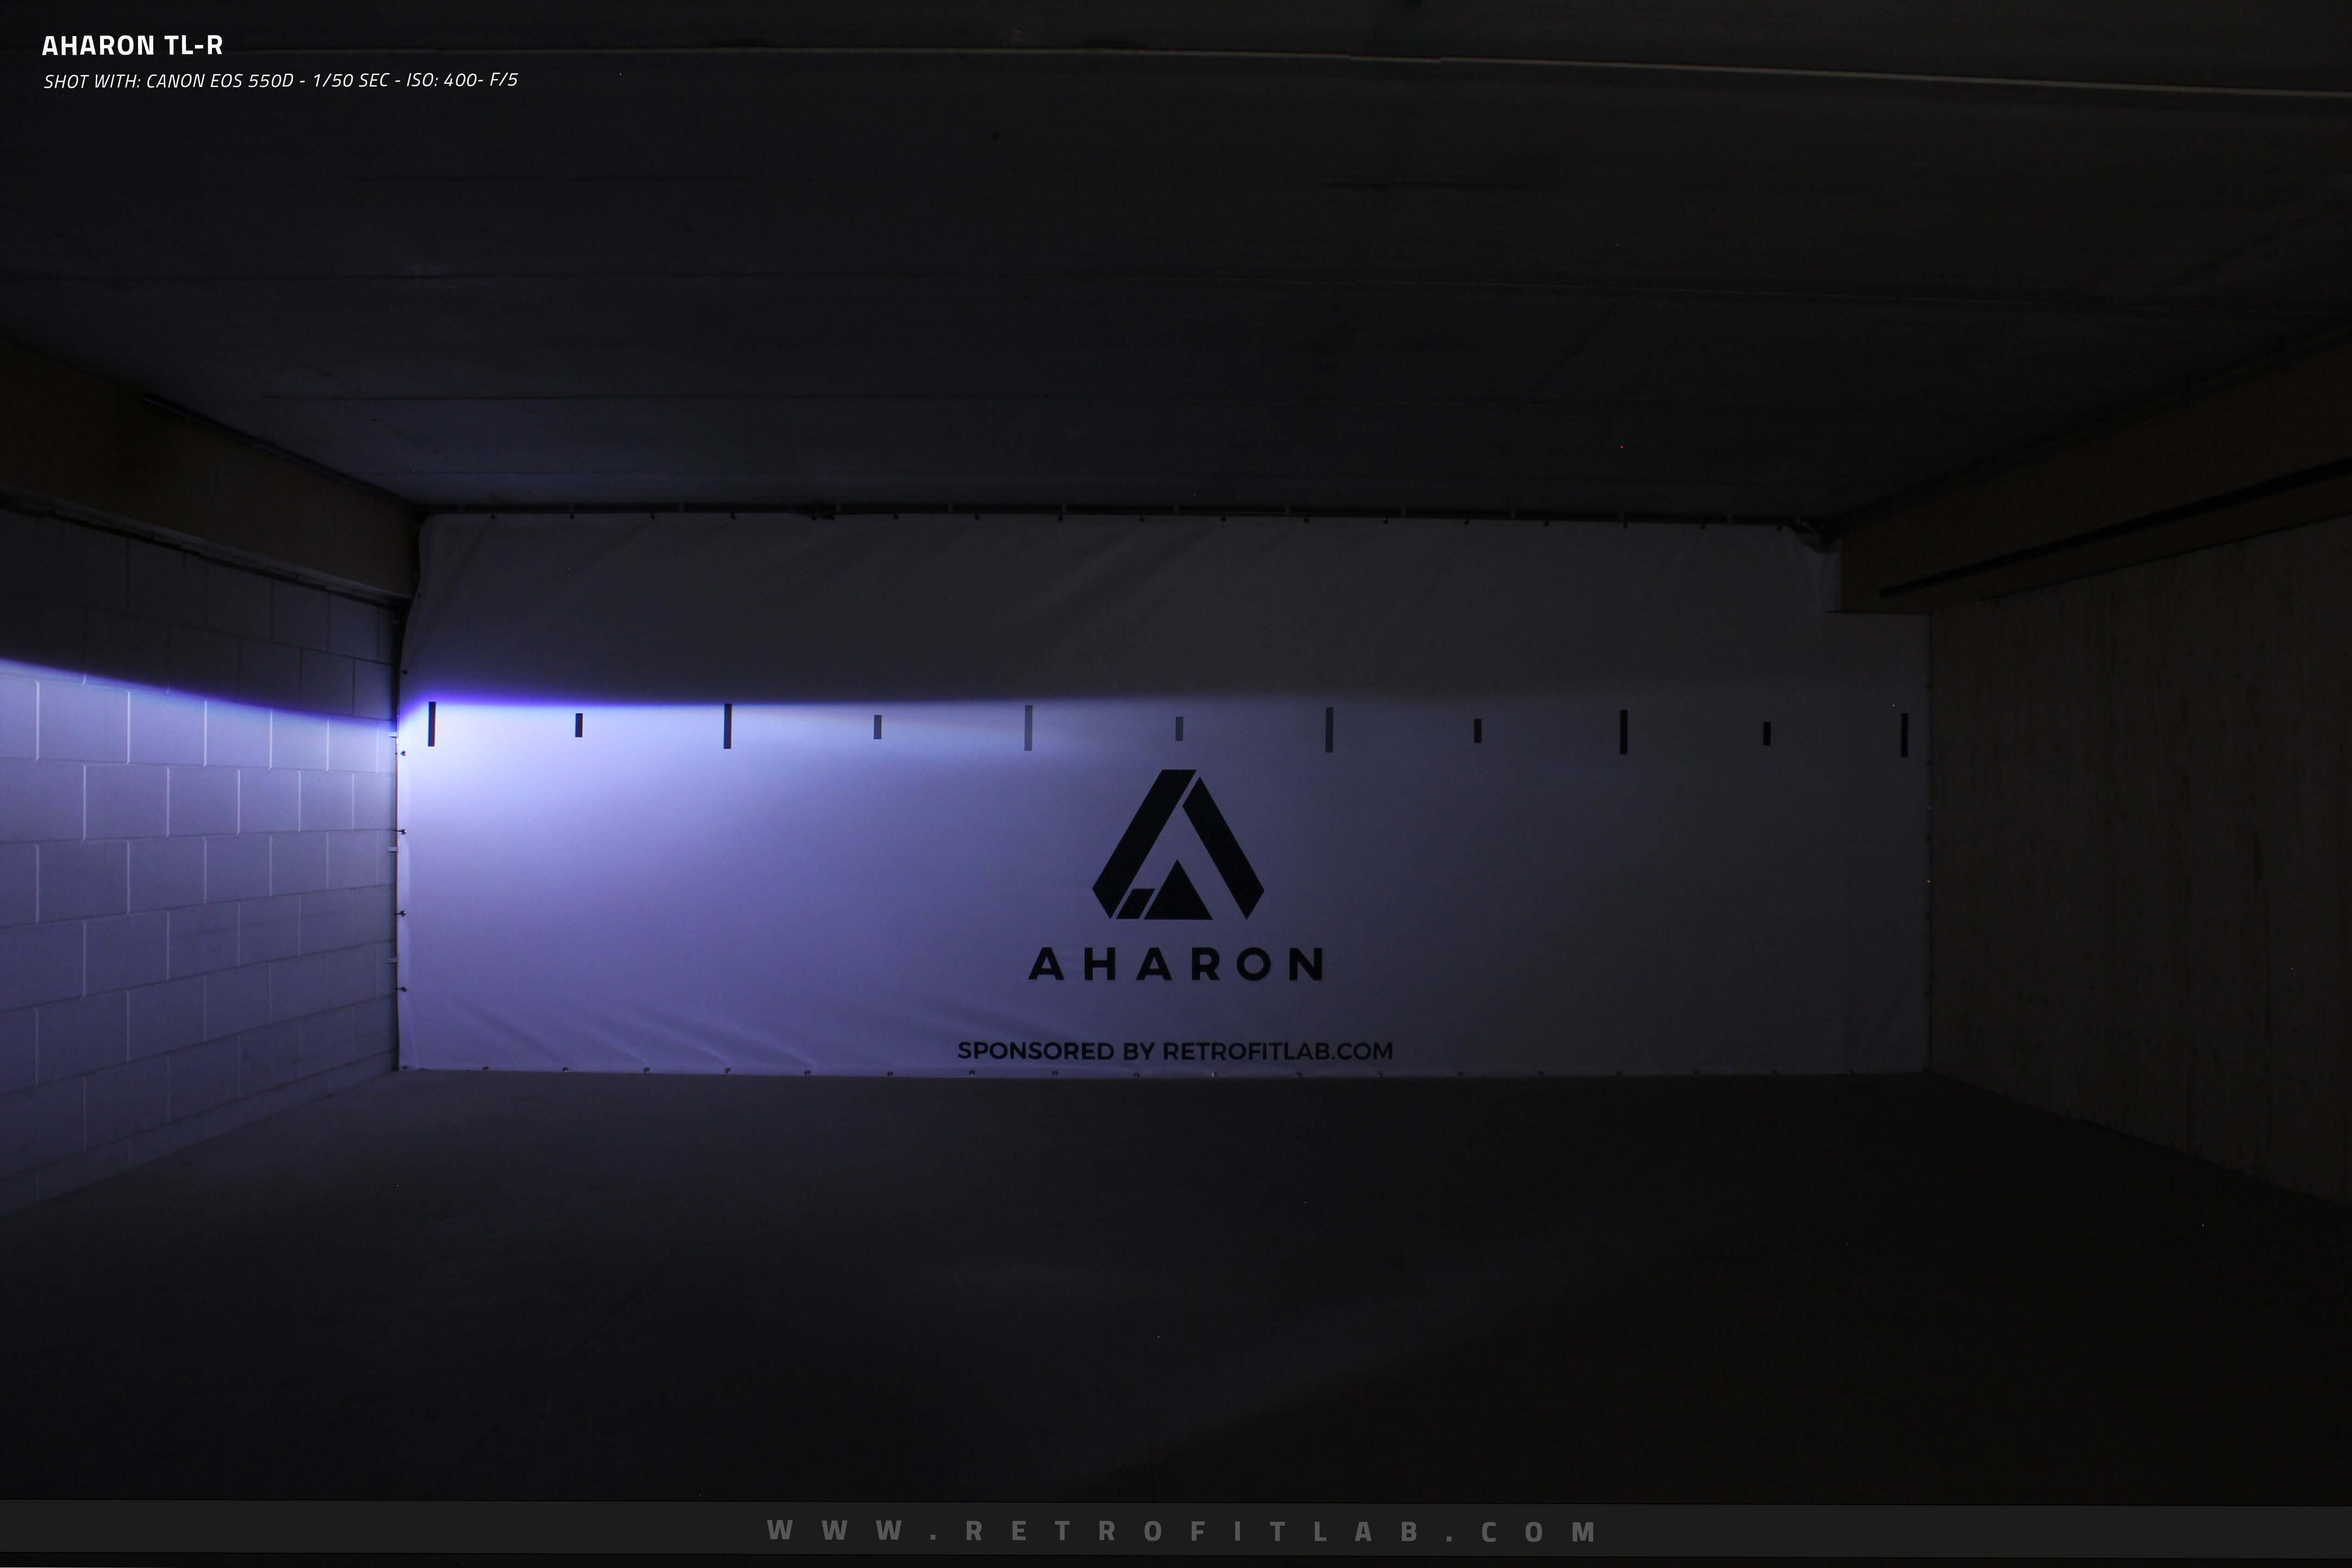 Aharon TL-R Bi-Xenon projectors